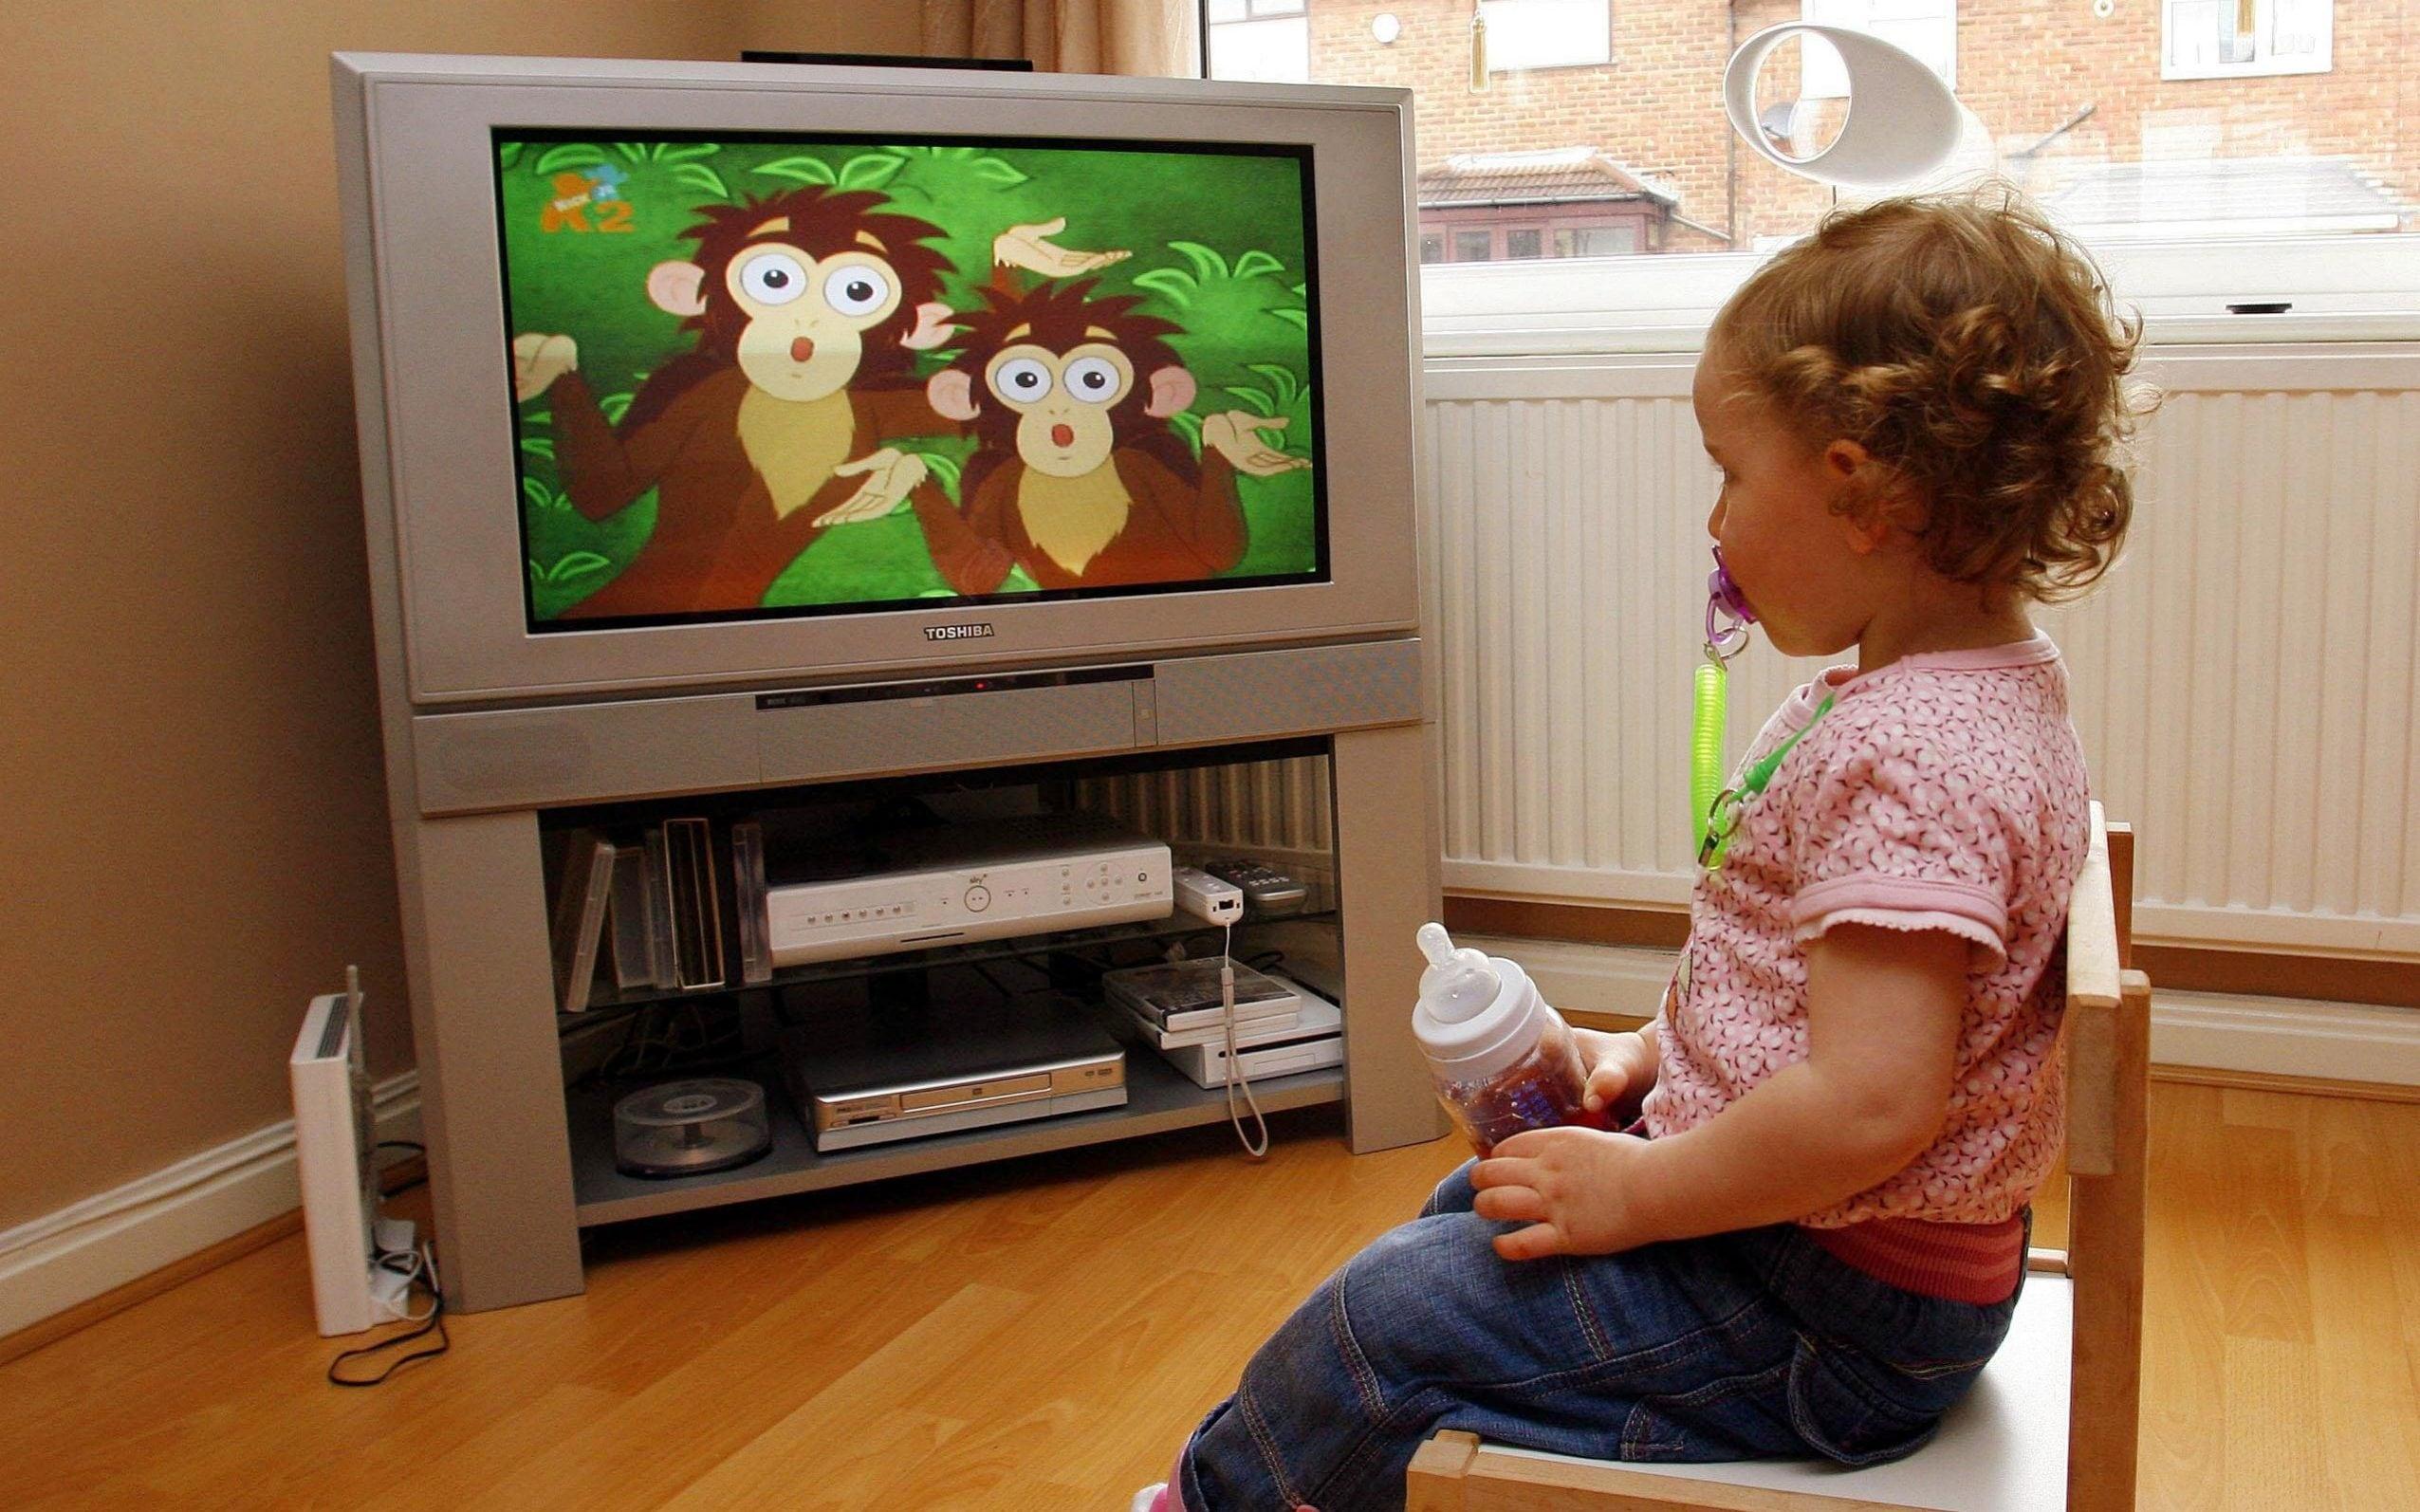 Može li gledanje televizije utjecati na razvoj vida kod djeteta